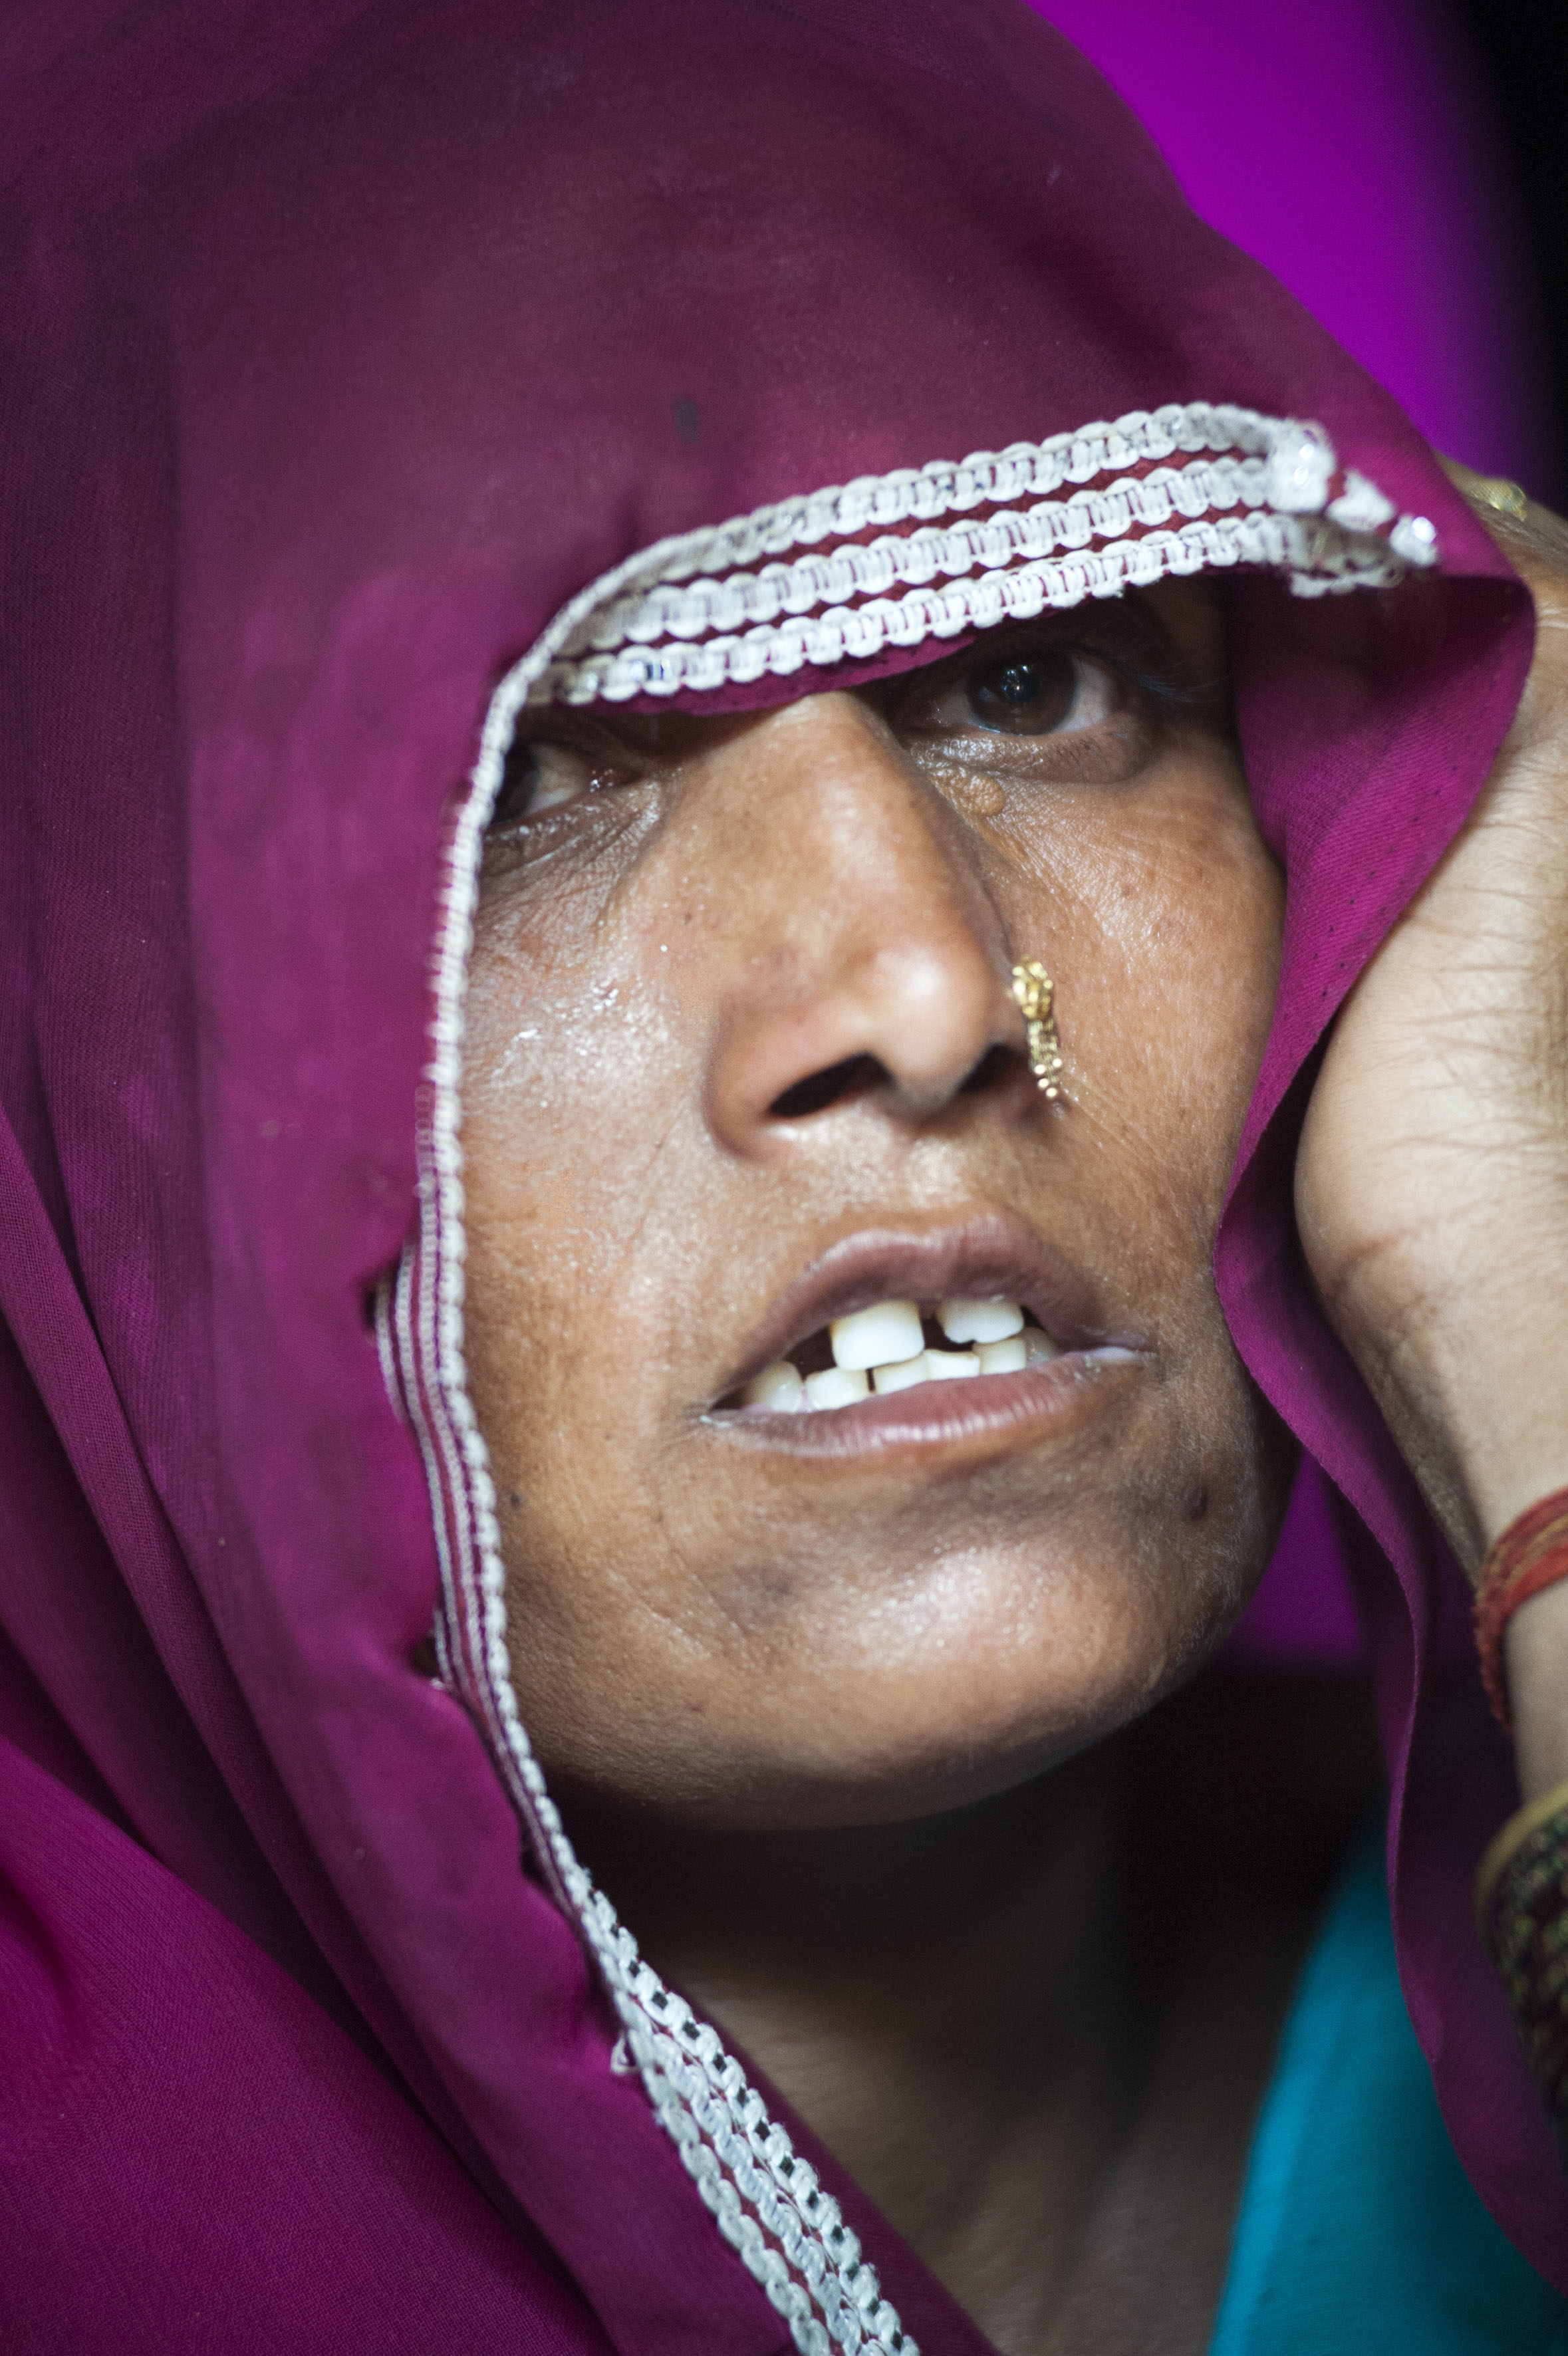 Sridevi (40) mother of the victim Murti in Katra Sadatganj village, Uttar Pradesh, India on May 30, 2014.